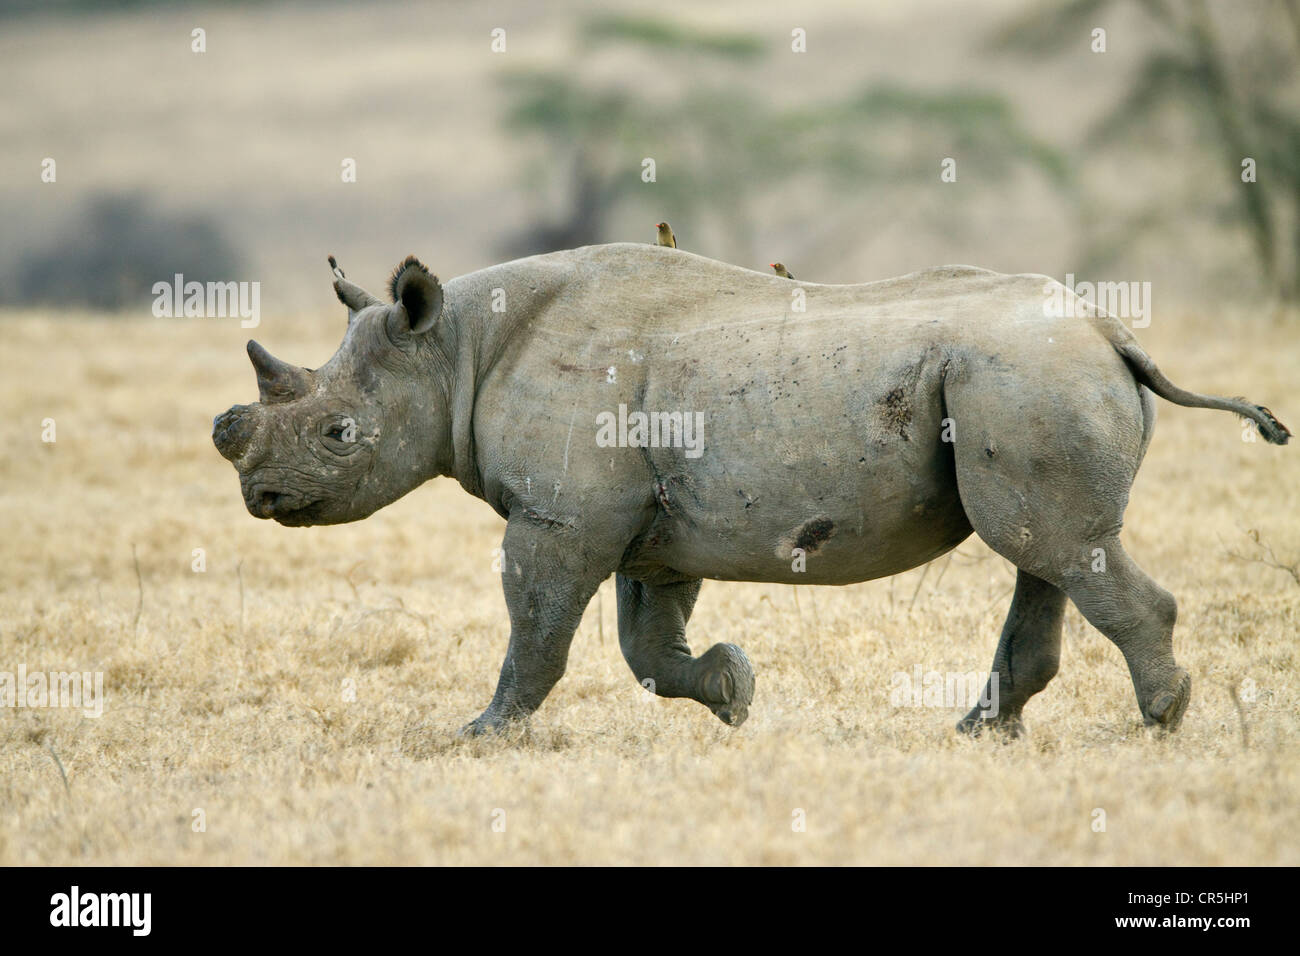 Kenya, Nakuru National Park, rinoceronte nero (Diceros simum), femmina con il taglio il clacson per proteggerlo contro i cacciatori di frodo Foto Stock